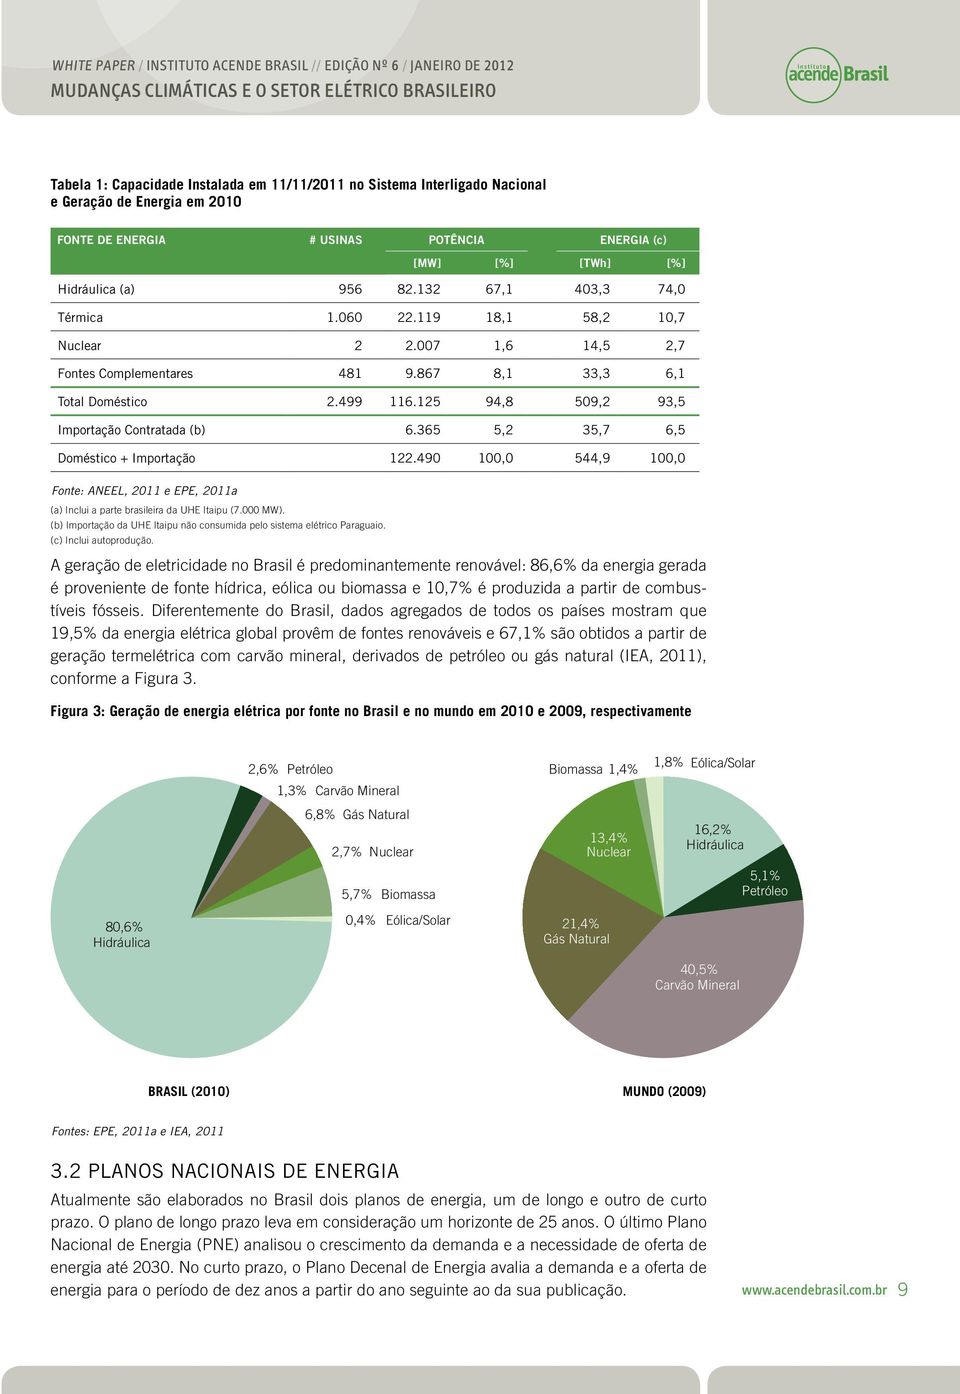 365 5,2 35,7 6,5 Doméstico + Importação 122.490 100,0 544,9 100,0 Font: ANEEL, 2011 EPE, 2011a (a) Inclui a part brasilira da UHE Itaipu (7.000 MW).